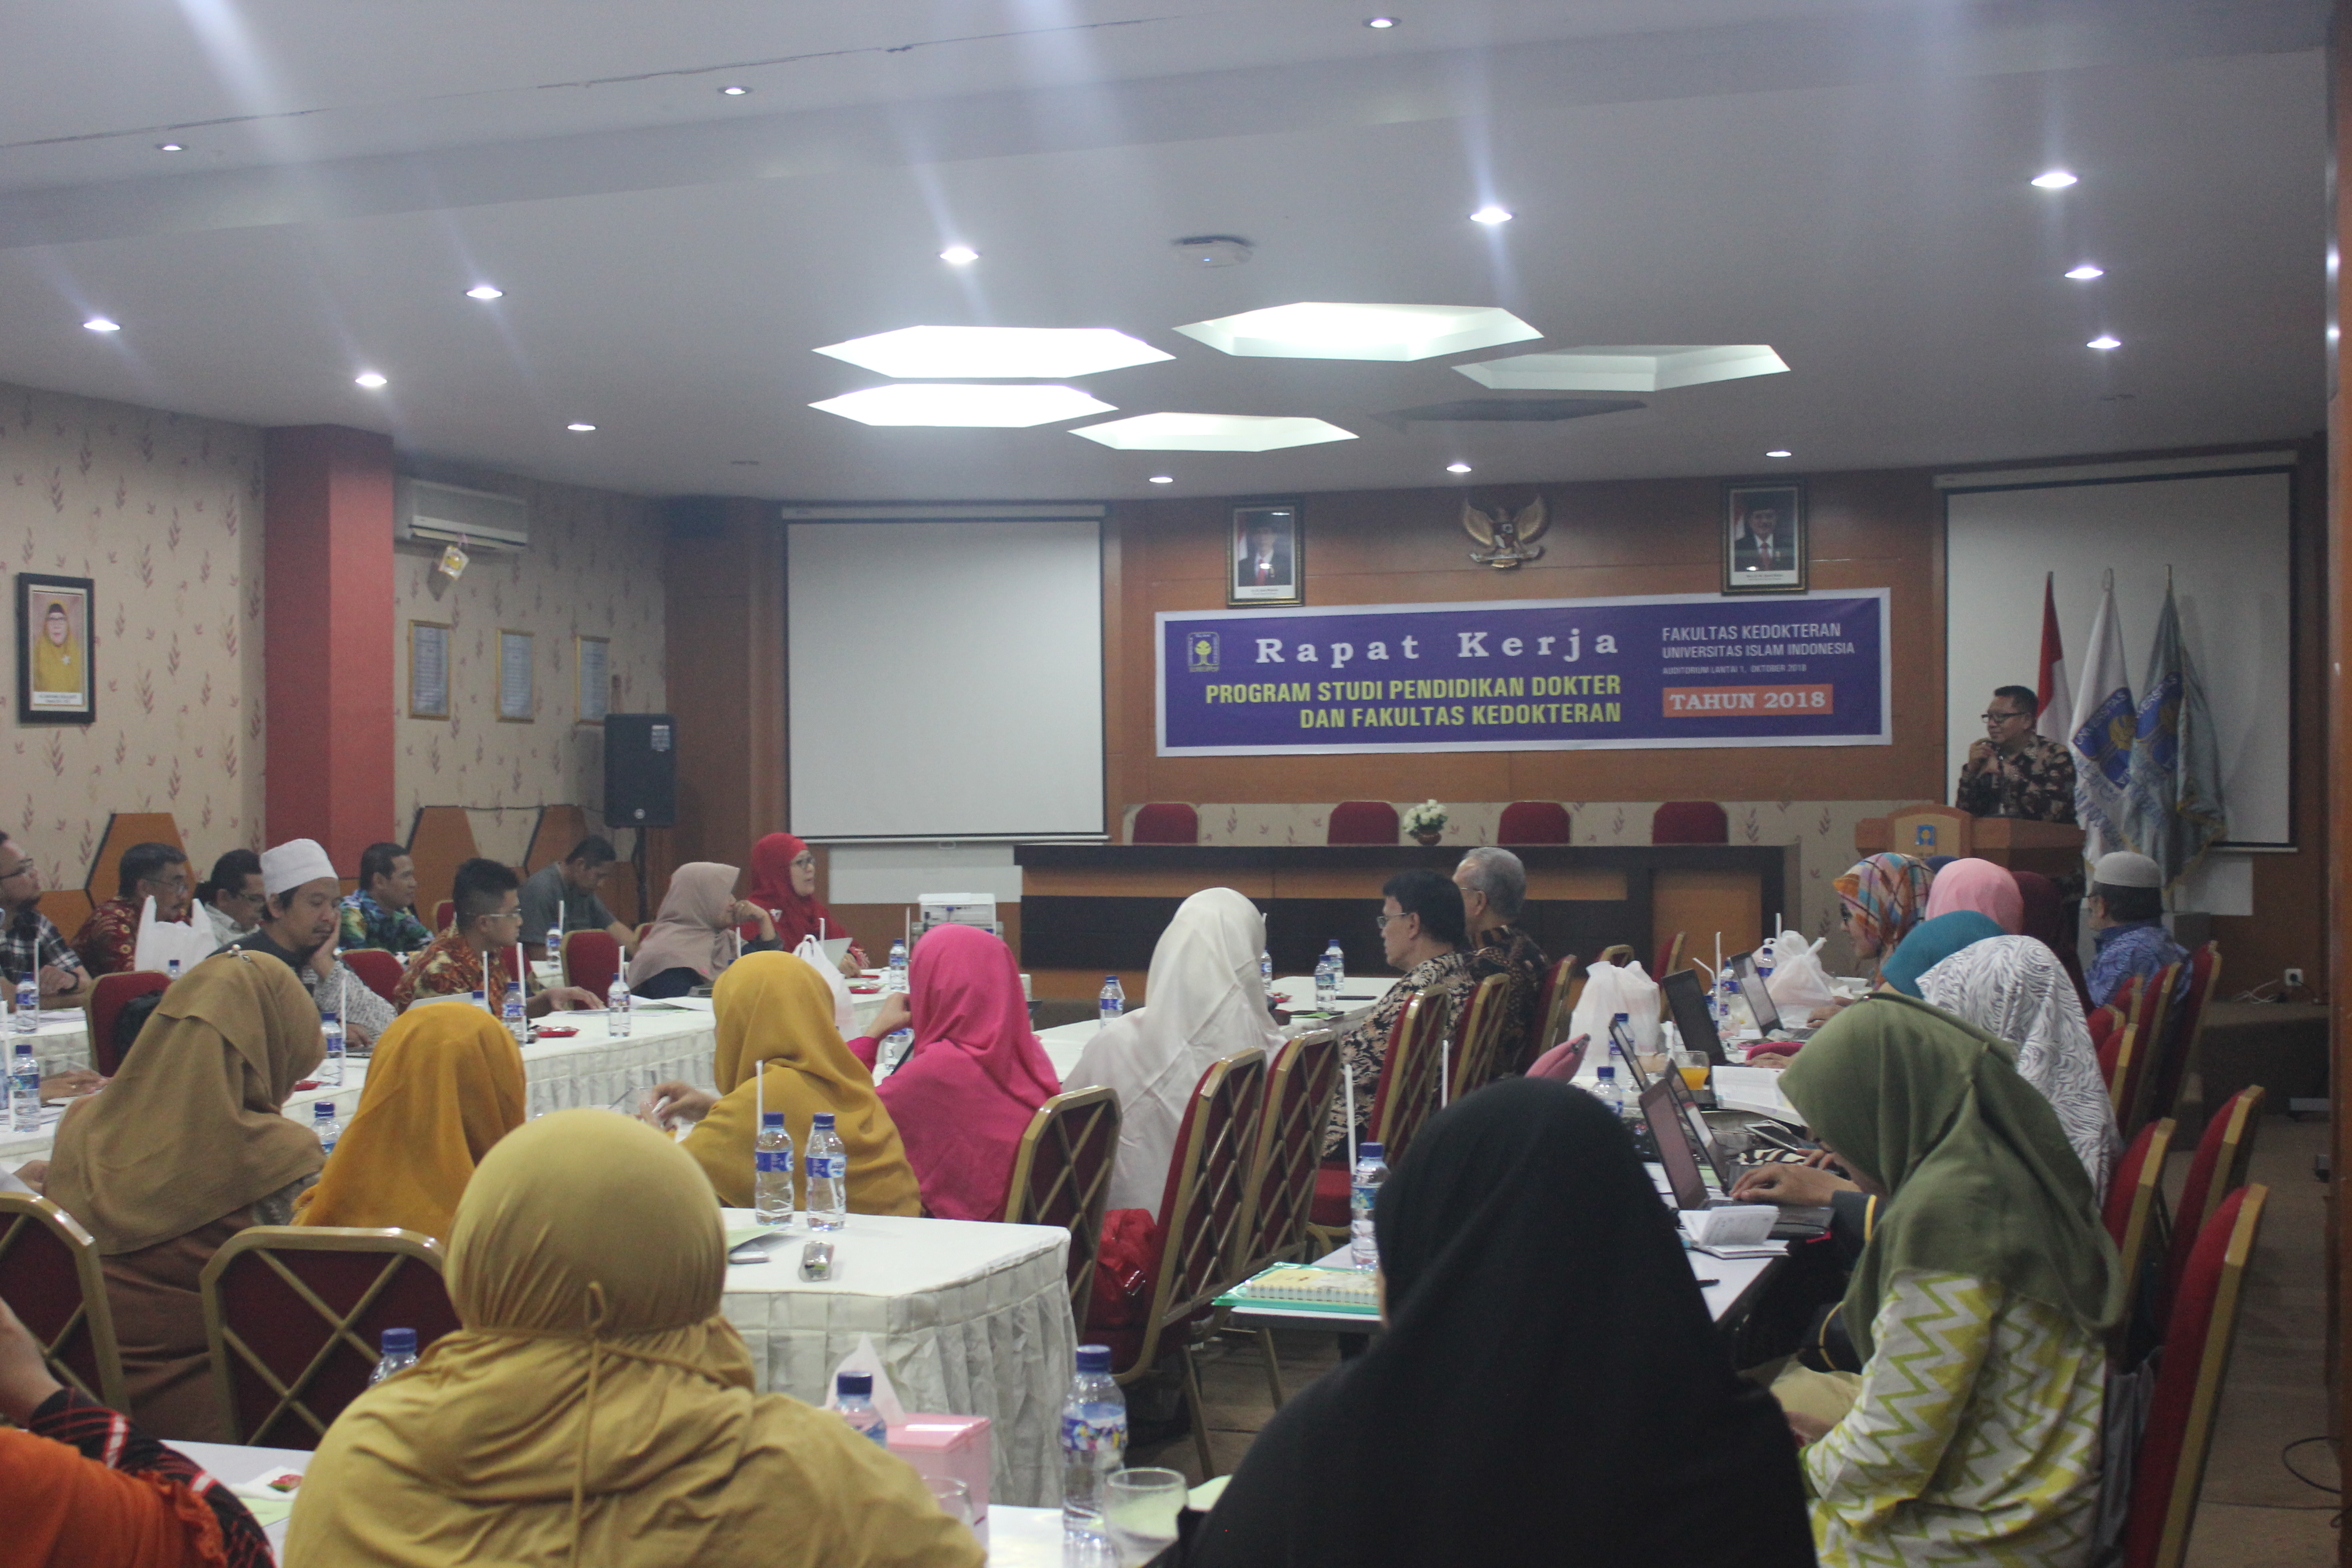 Kedokteran – Program Studi Pendidikan Dokter PSPD Fakultas Kedokteran Universitas Islam Indonesia kembali menyelenggarakan kegiatan Rapat Kerja tahun 2018